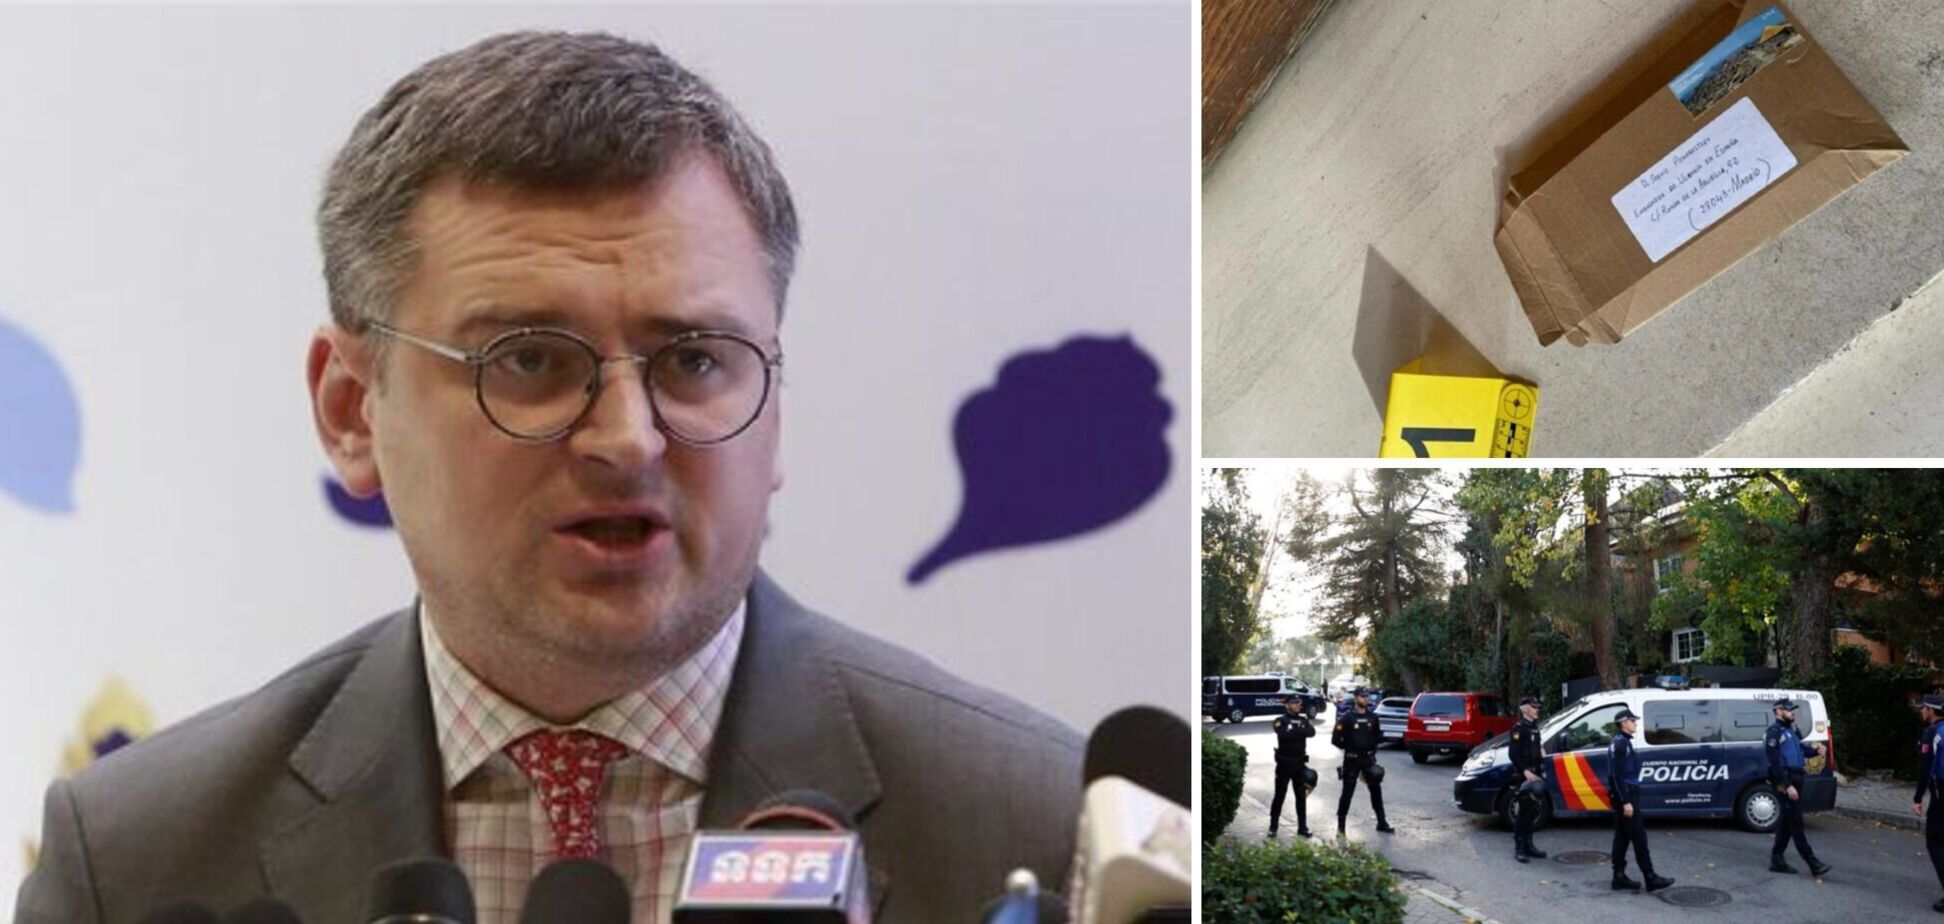 Началась целенаправленная кампания против Украины за границей, — Кулеба о взрывчатке в посольствах